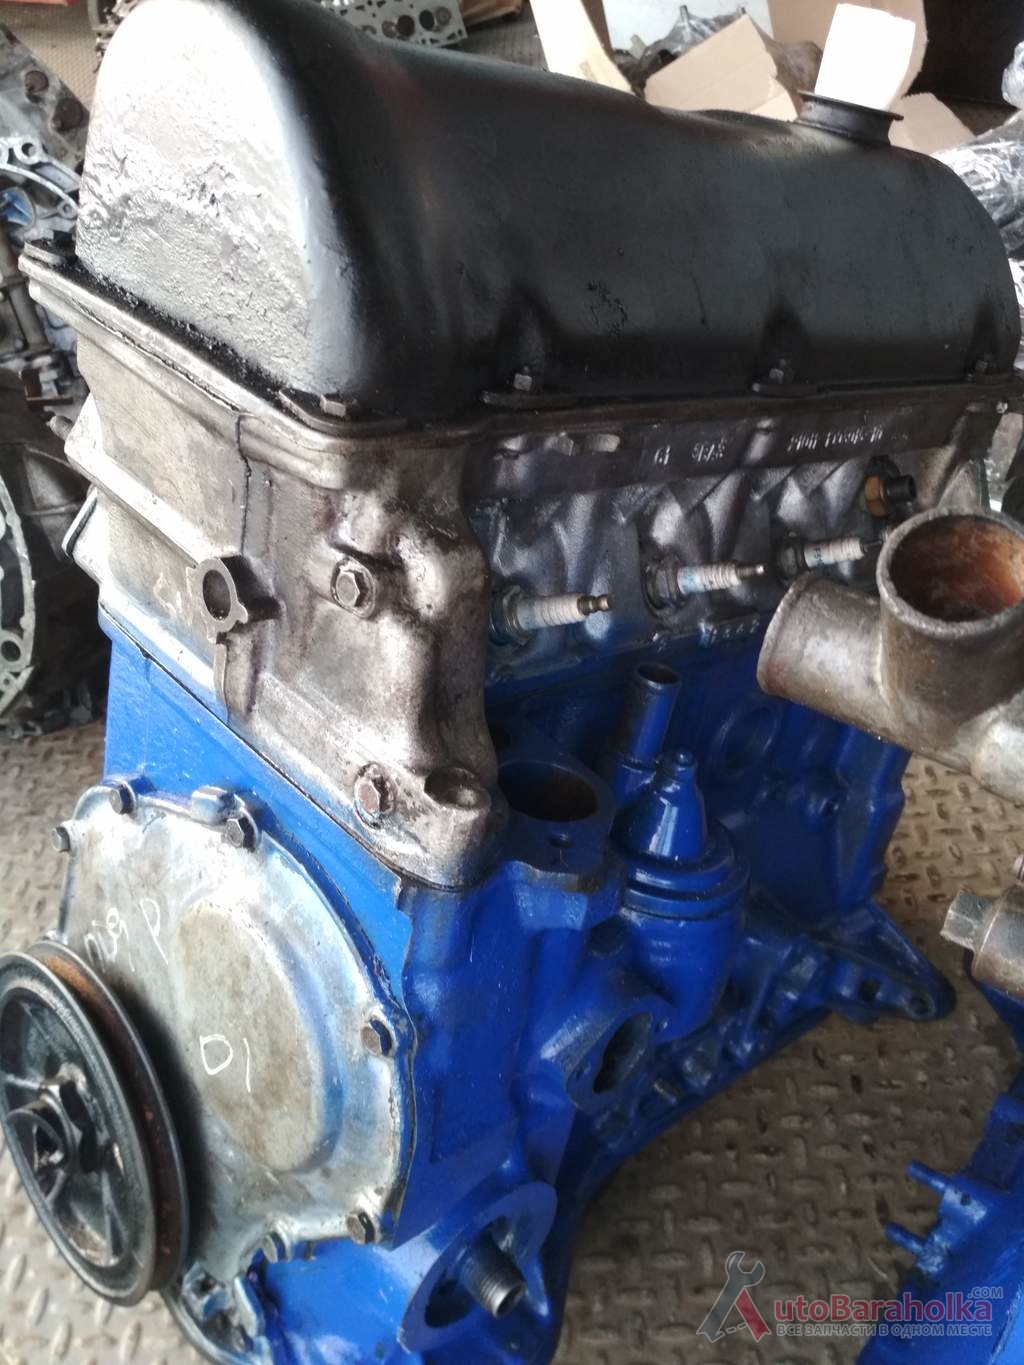 Продам Двигатель ВАЗ 2101 21011 2103 2105 2106 2121 из Польши, малый пробег, отличное состояние. Гарантия Херсон